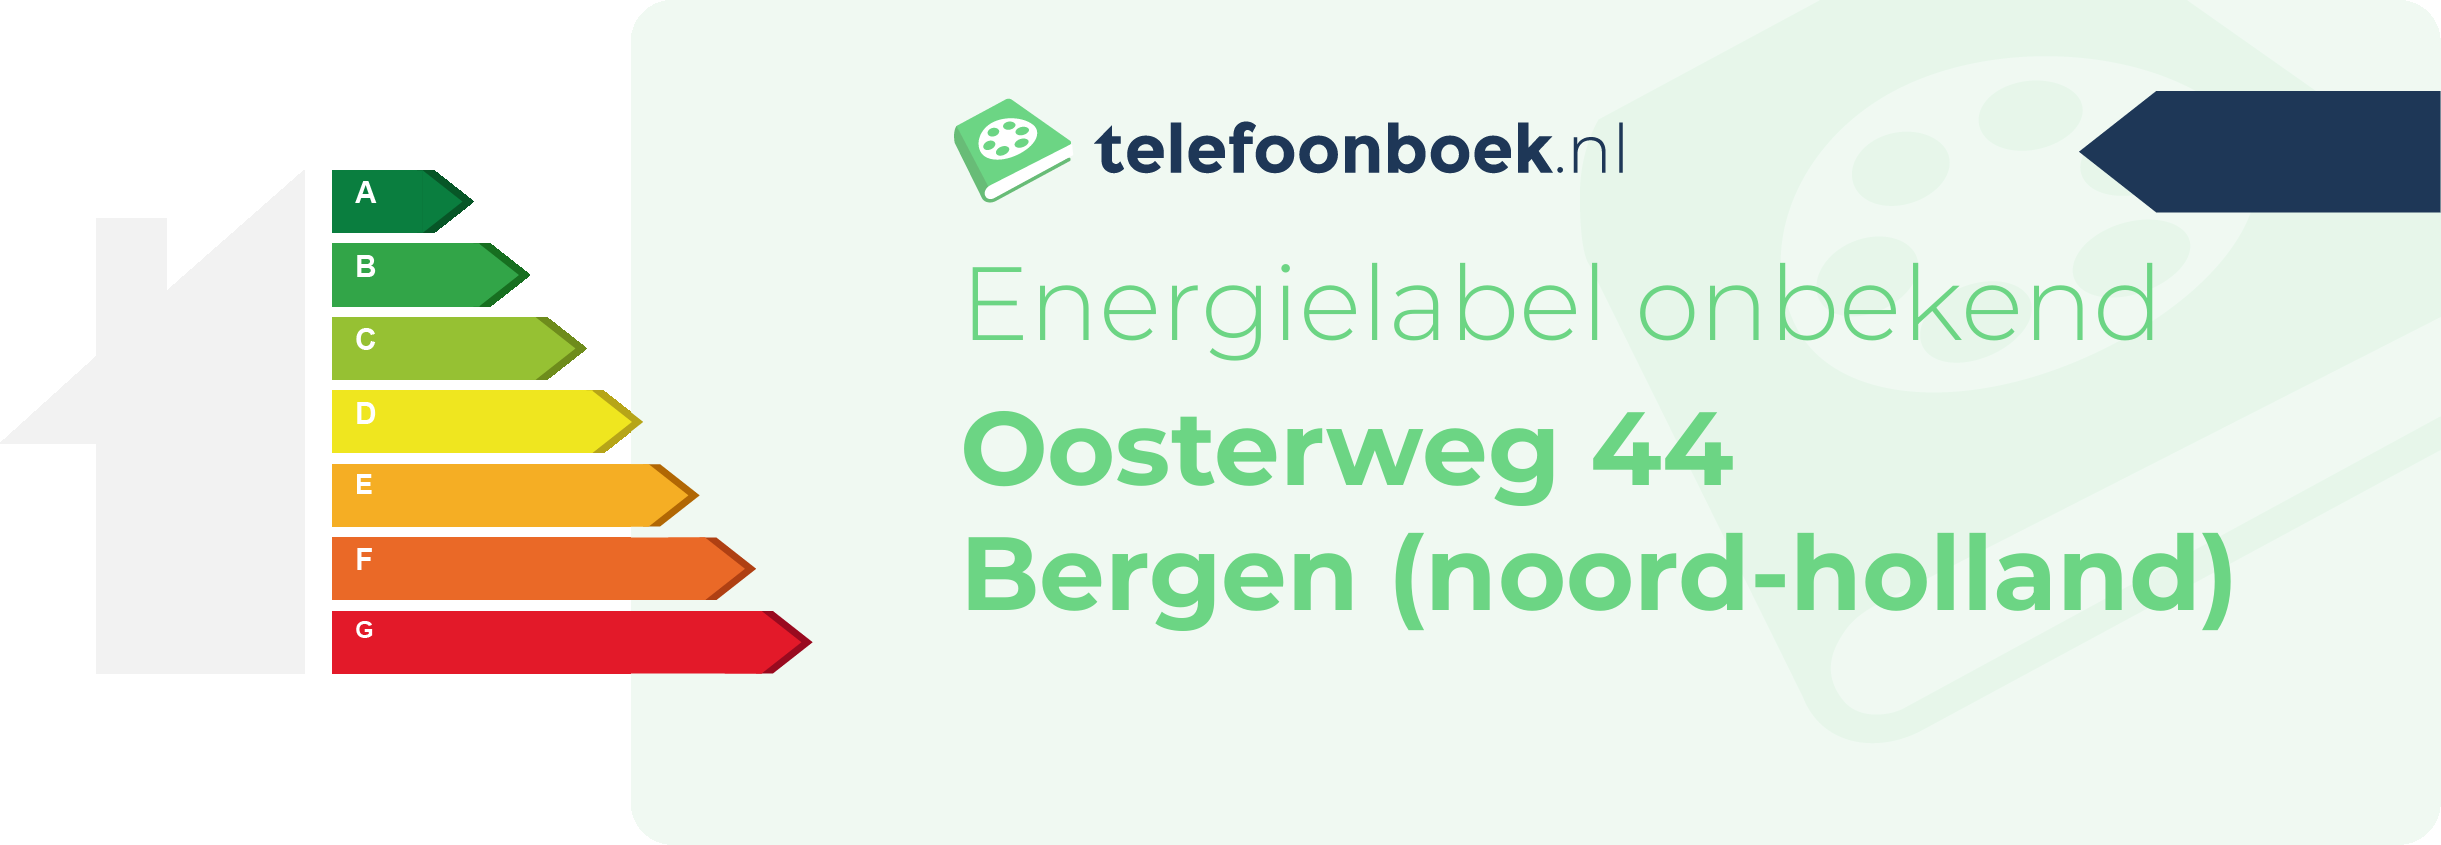 Energielabel Oosterweg 44 Bergen (Noord-Holland)